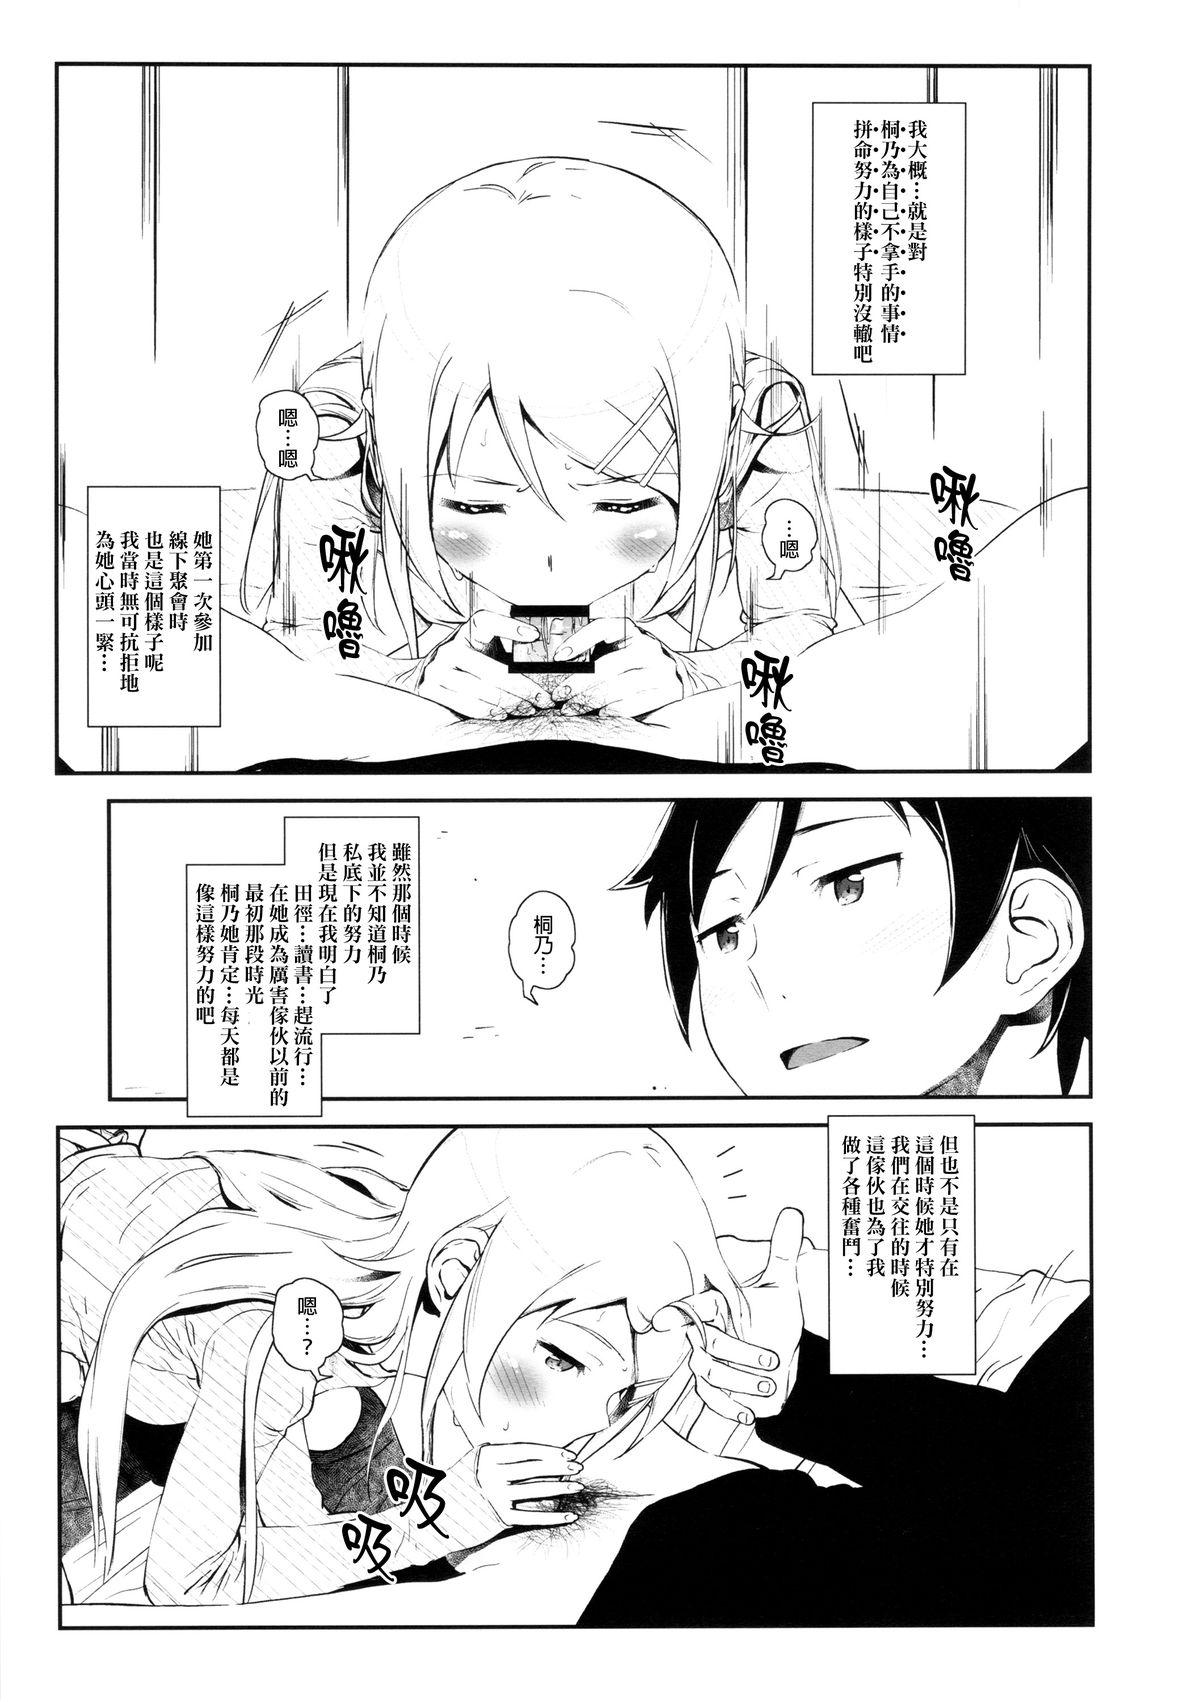 Amature Sex Hoshikuzu Namida 3 - Ore no imouto ga konna ni kawaii wake ga nai Moneytalks - Page 10